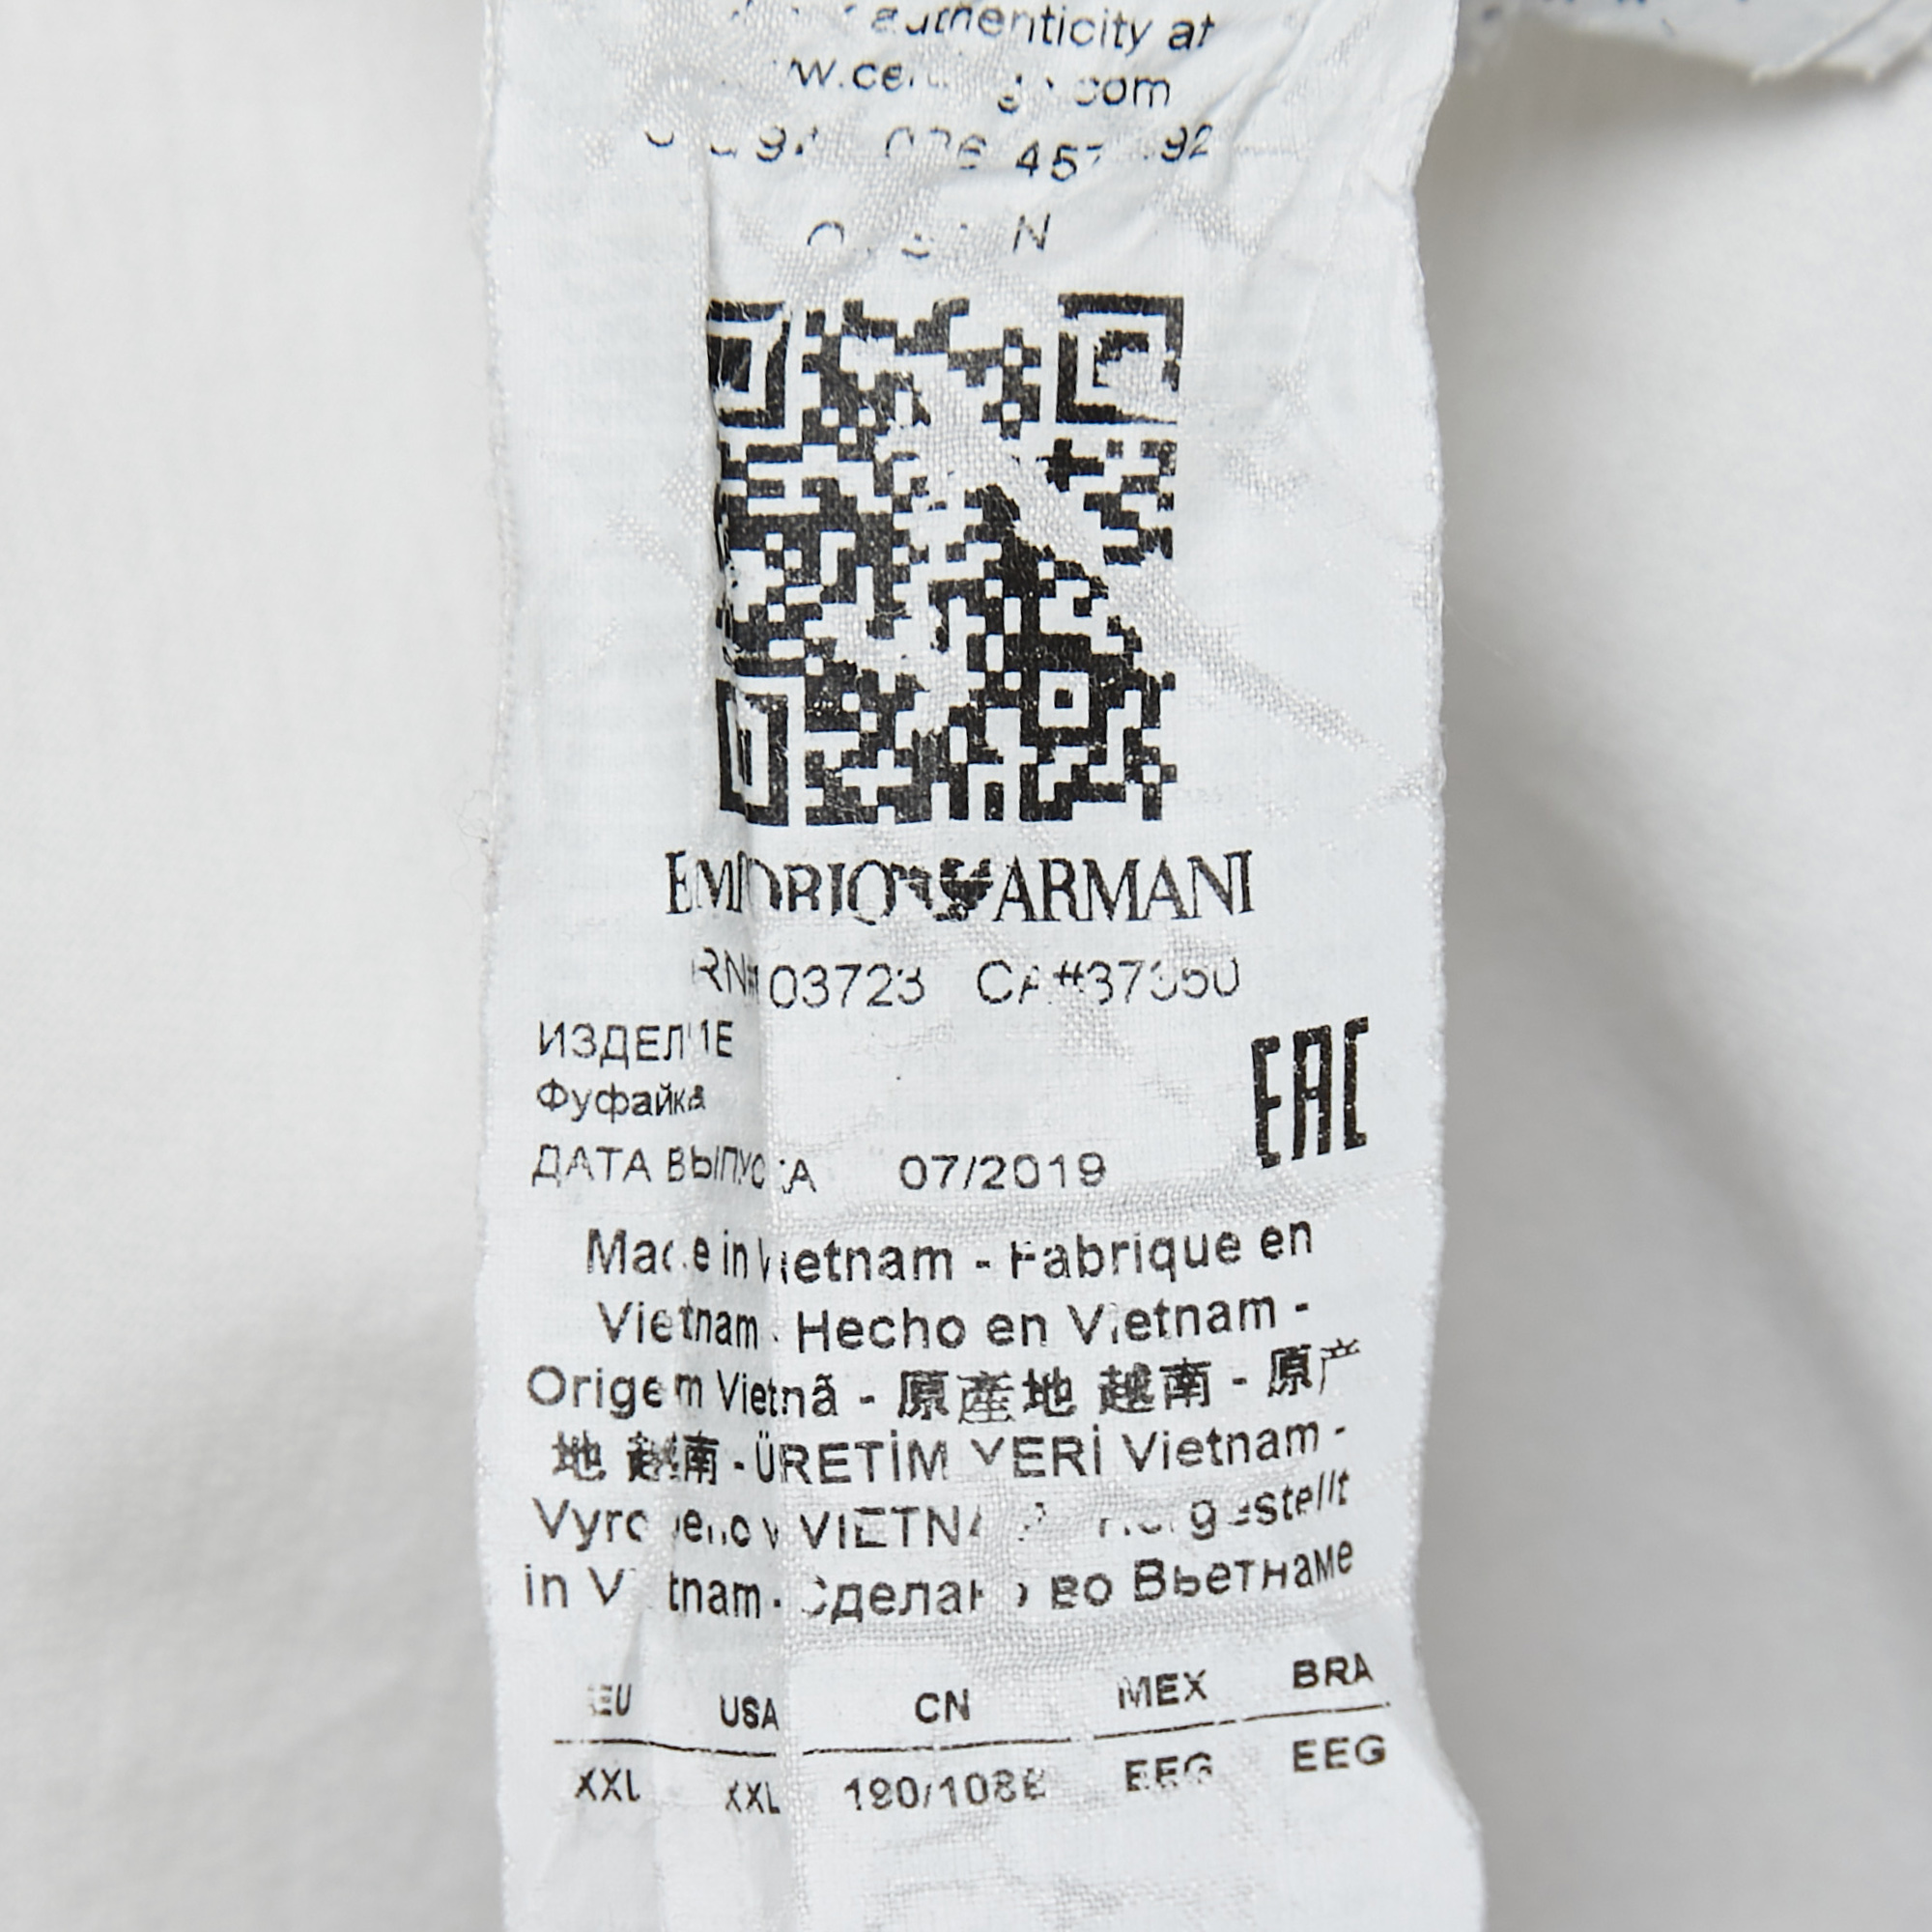 Emporio Armani White Logo Embroidered Cotton Crew Neck T-Shirt XXL